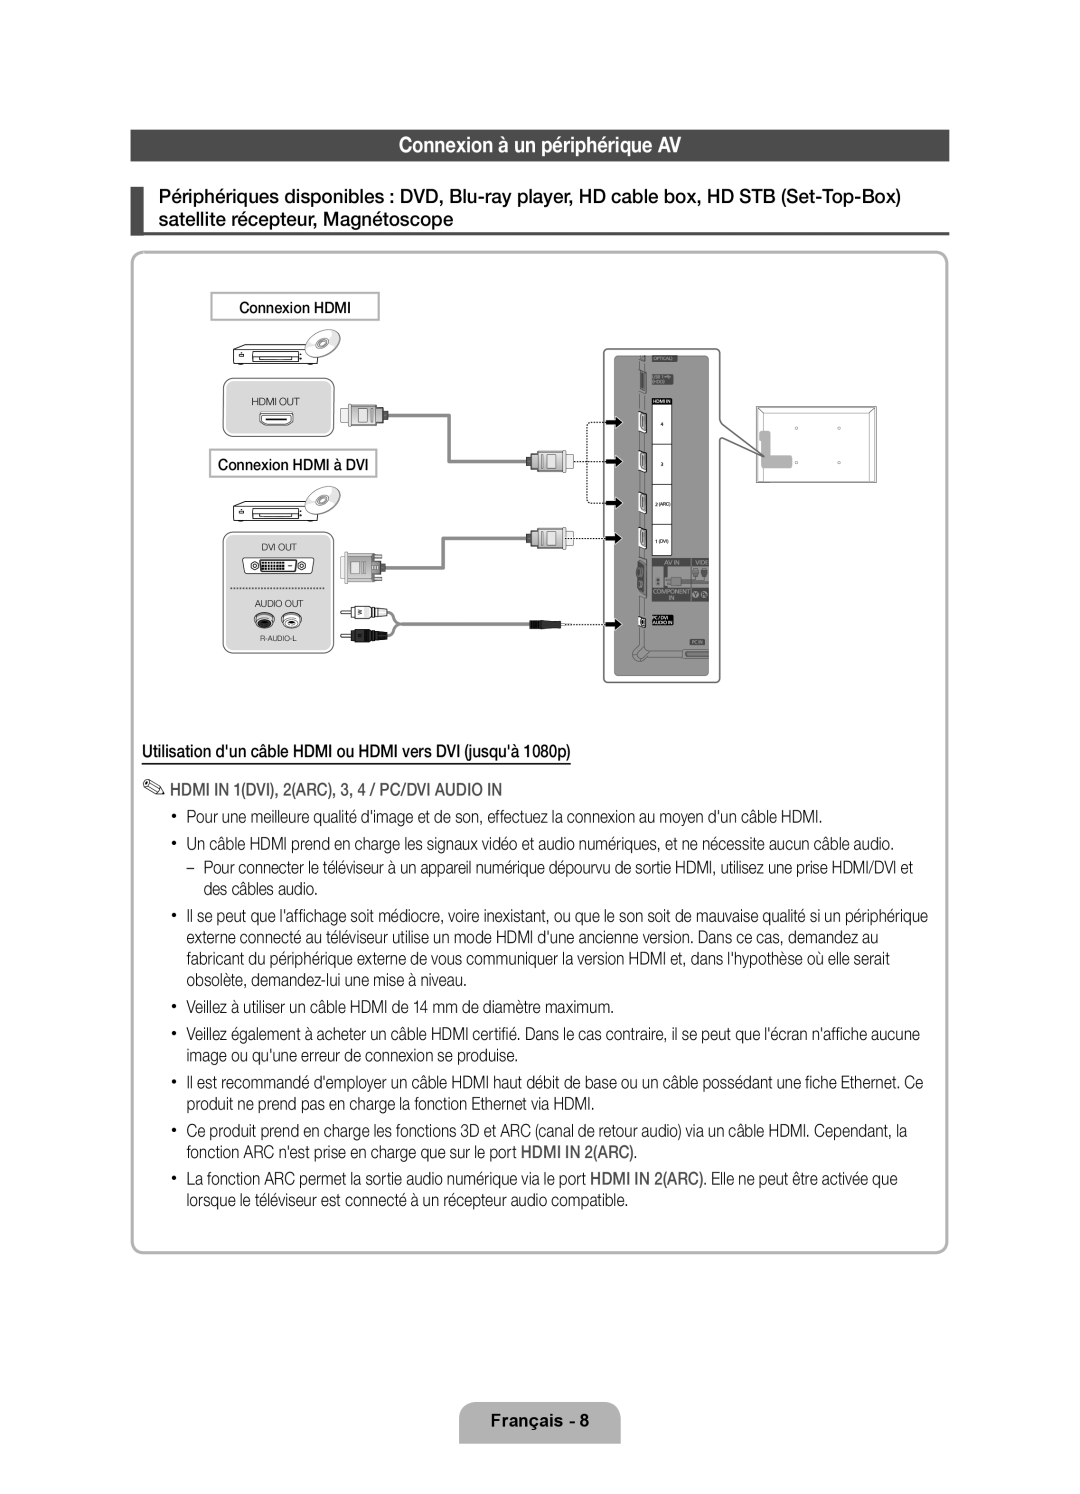 Samsung UE55D6000TPXZT manual Connexion à un périphérique AV, HDMI IN 1DVI, 2ARC, 3, 4 / PC/DVI AUDIO IN, Français 